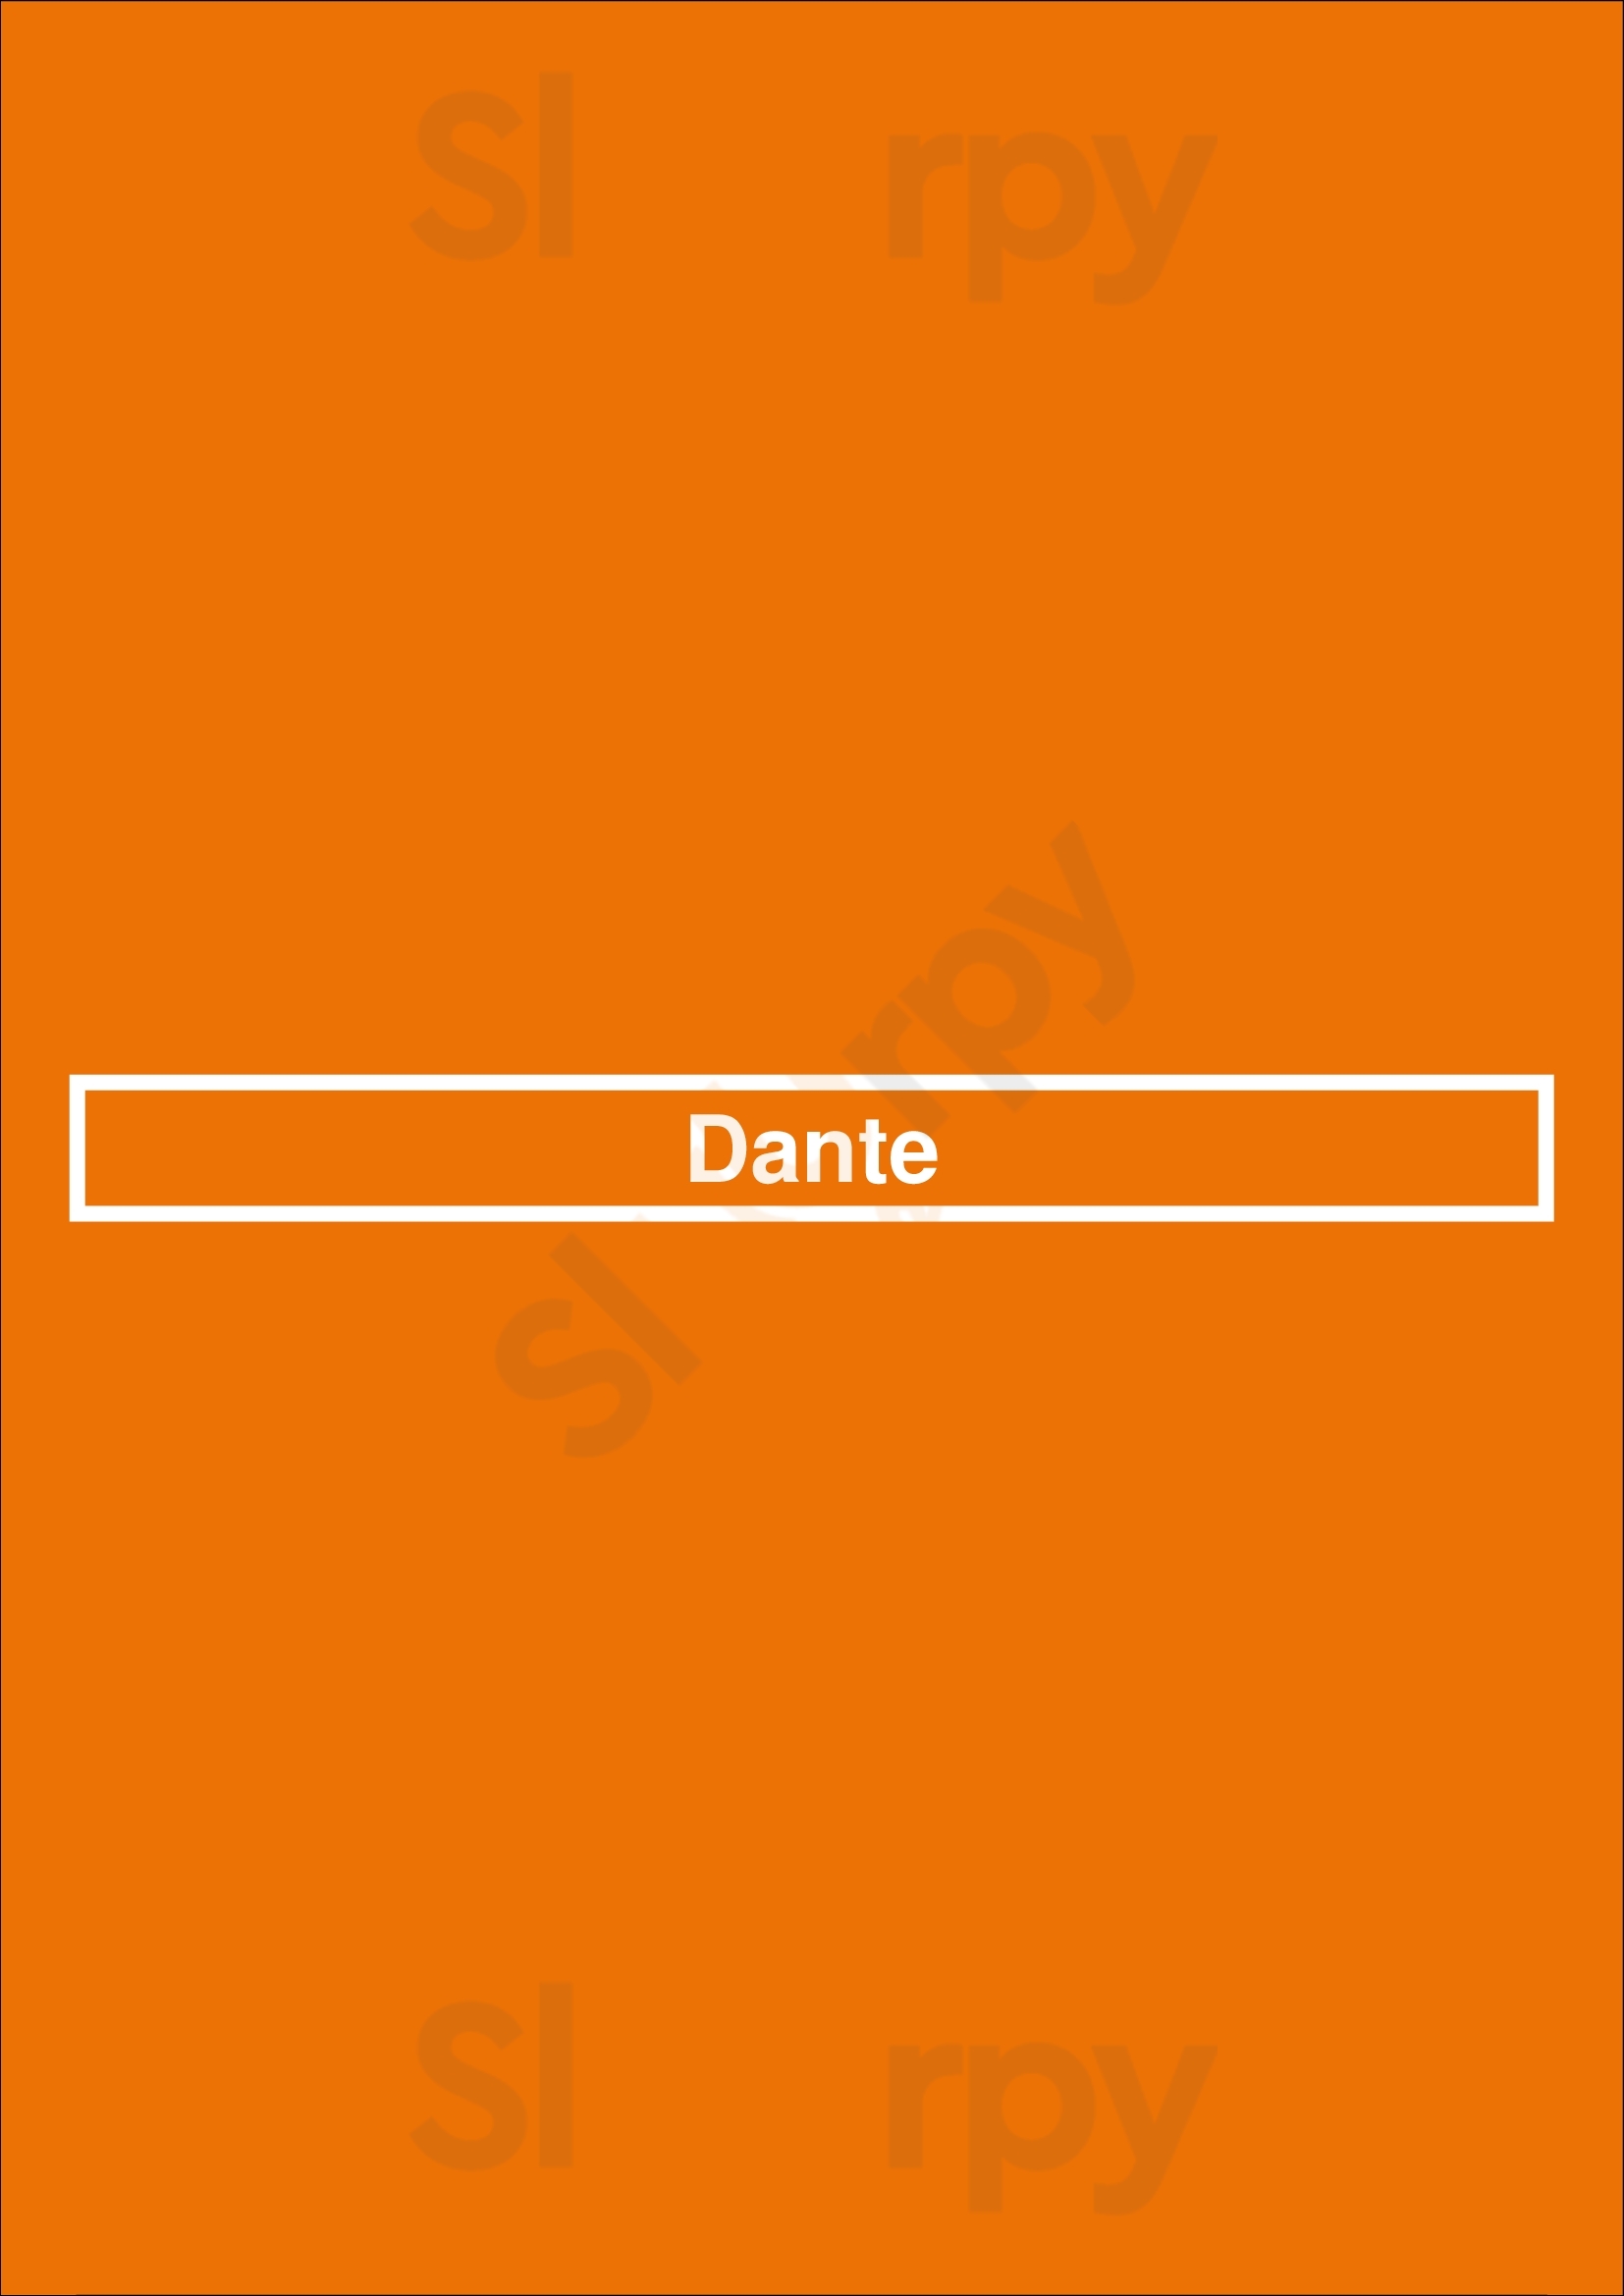 Dante Omaha Menu - 1